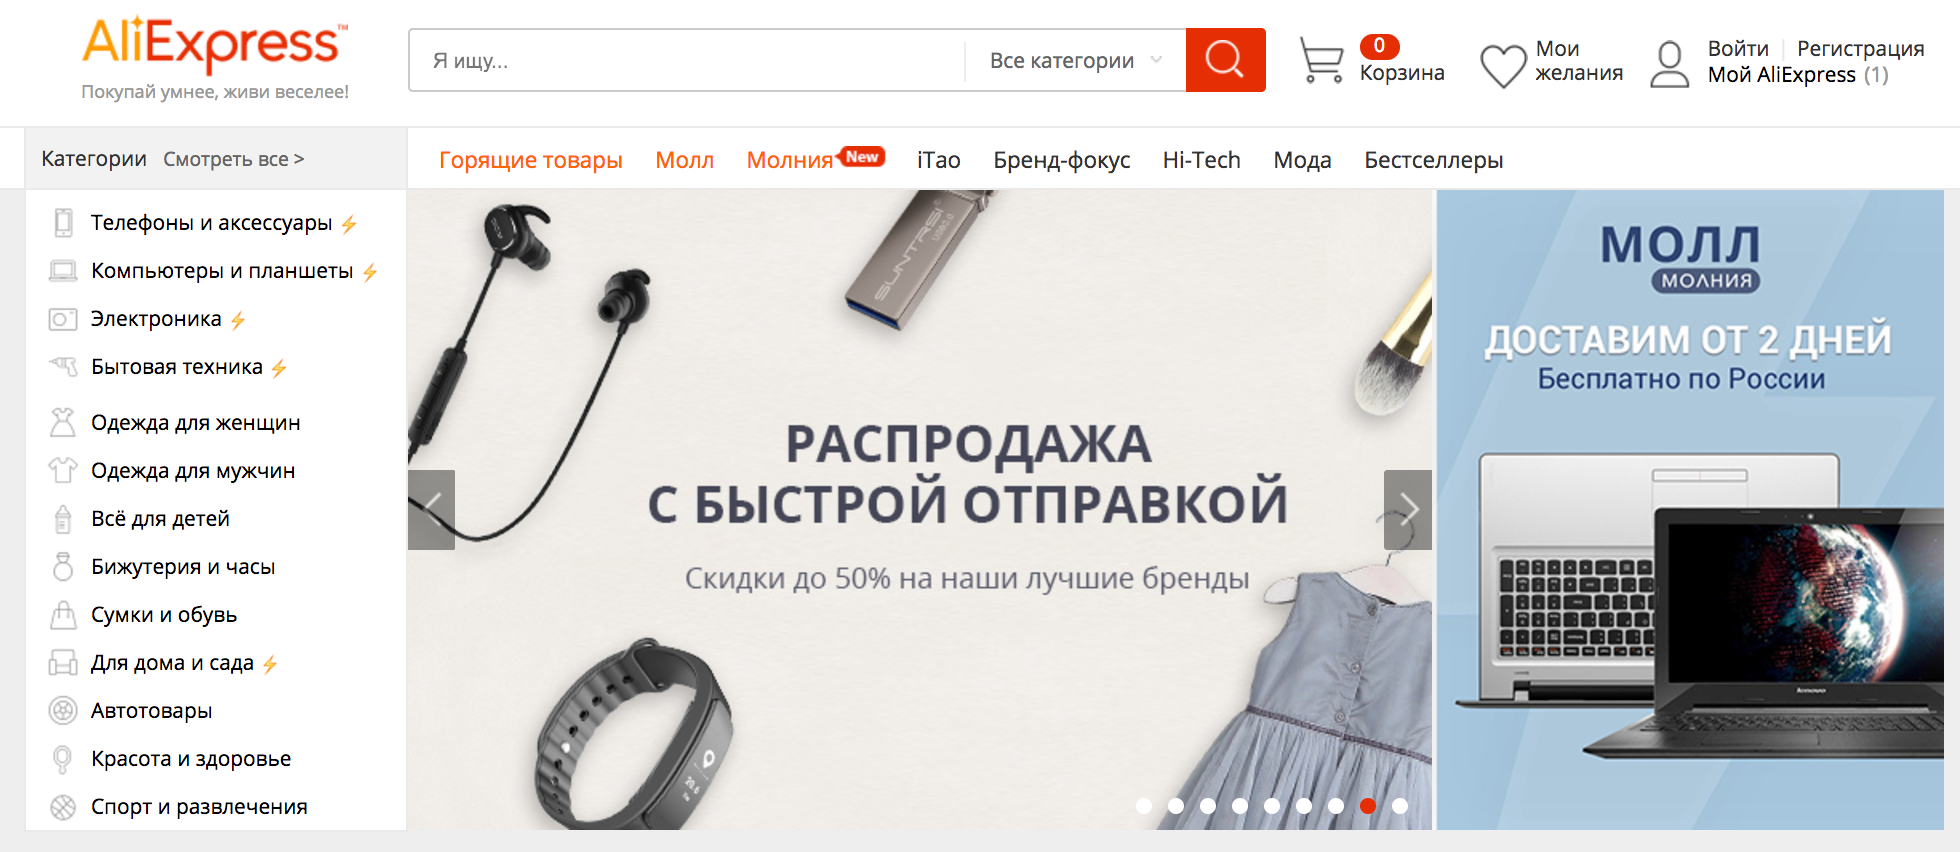 С 10 августа русские клиенты Aliexpress смогут отслеживать свои посылки